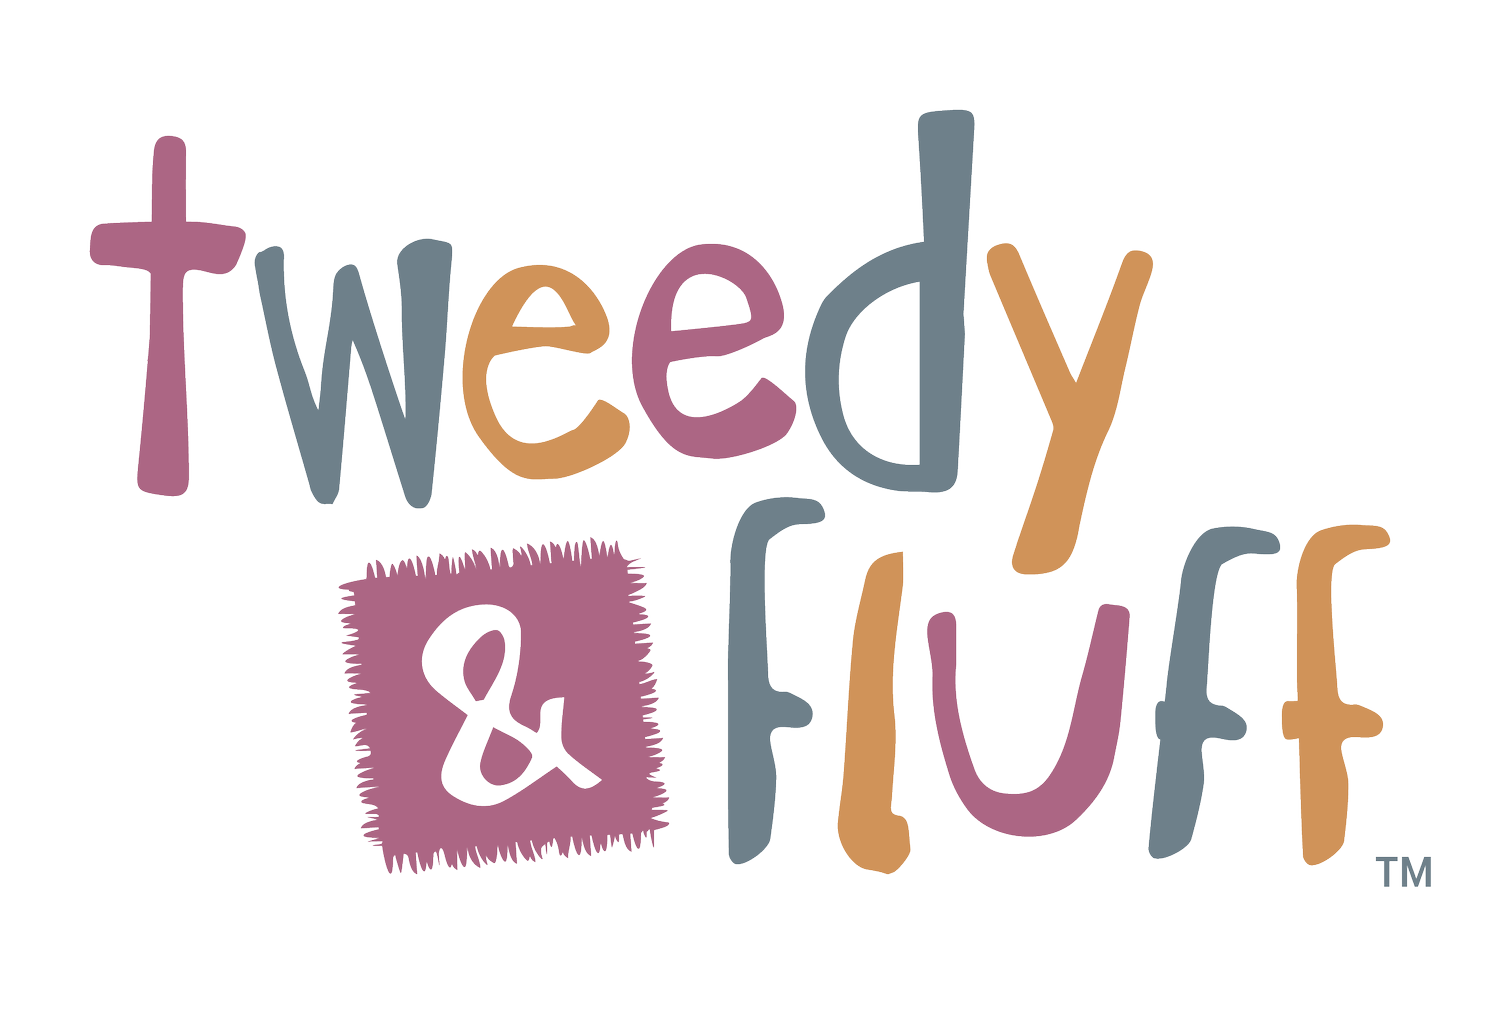 Tweedy & Fluff